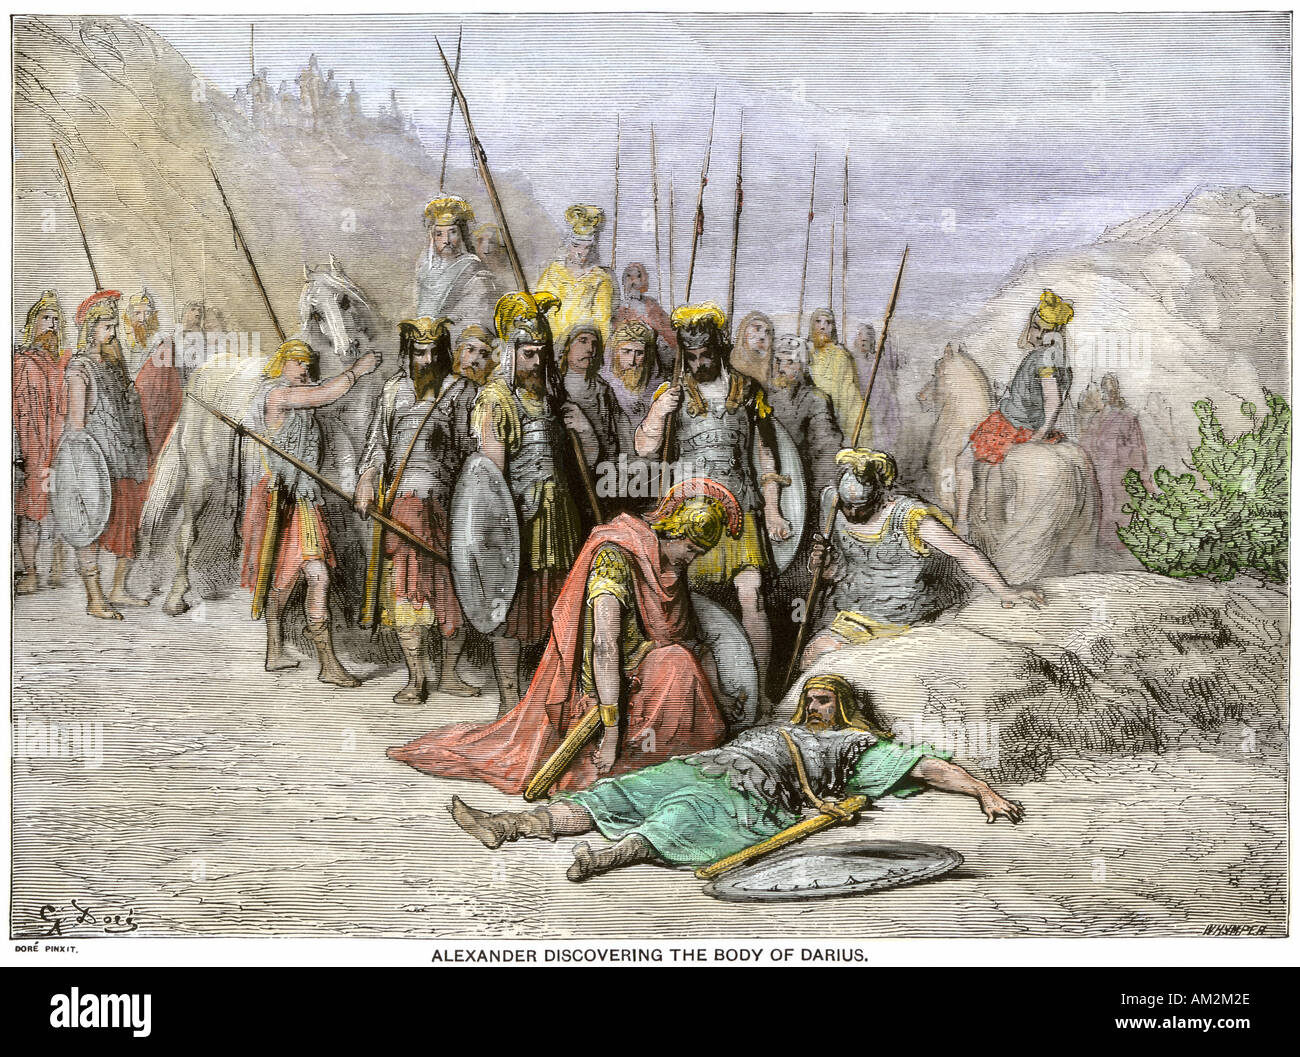 Alexandre le Grand en découvrant le corps de Darius, roi de Perse 331 BC. À la main, gravure sur bois, d'une illustration de Gustave Dore Banque D'Images